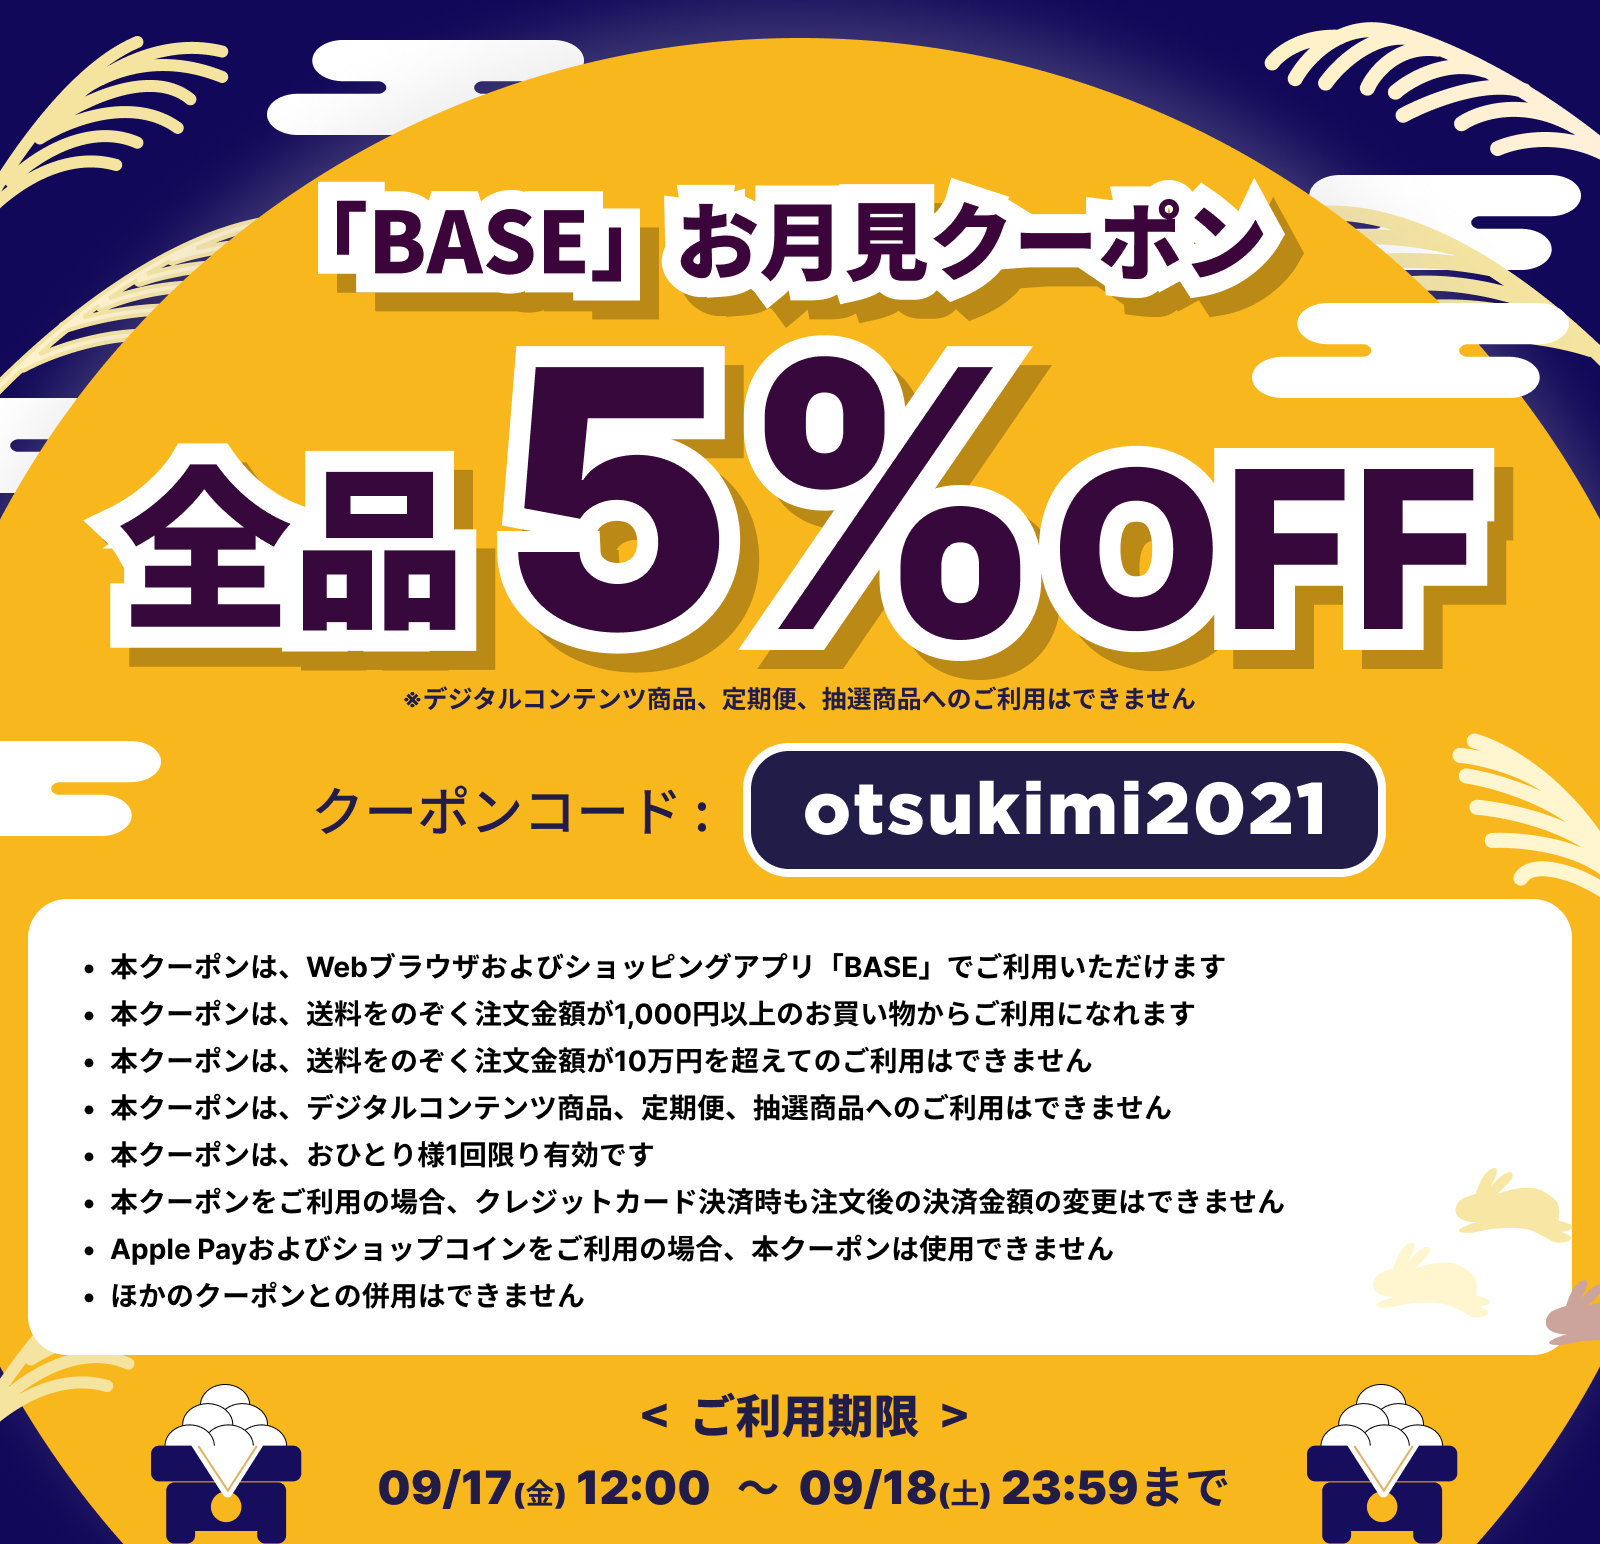 📢🎁クーポンコード「 otsukimi2021 」割引タイム開始しました！🌕✨